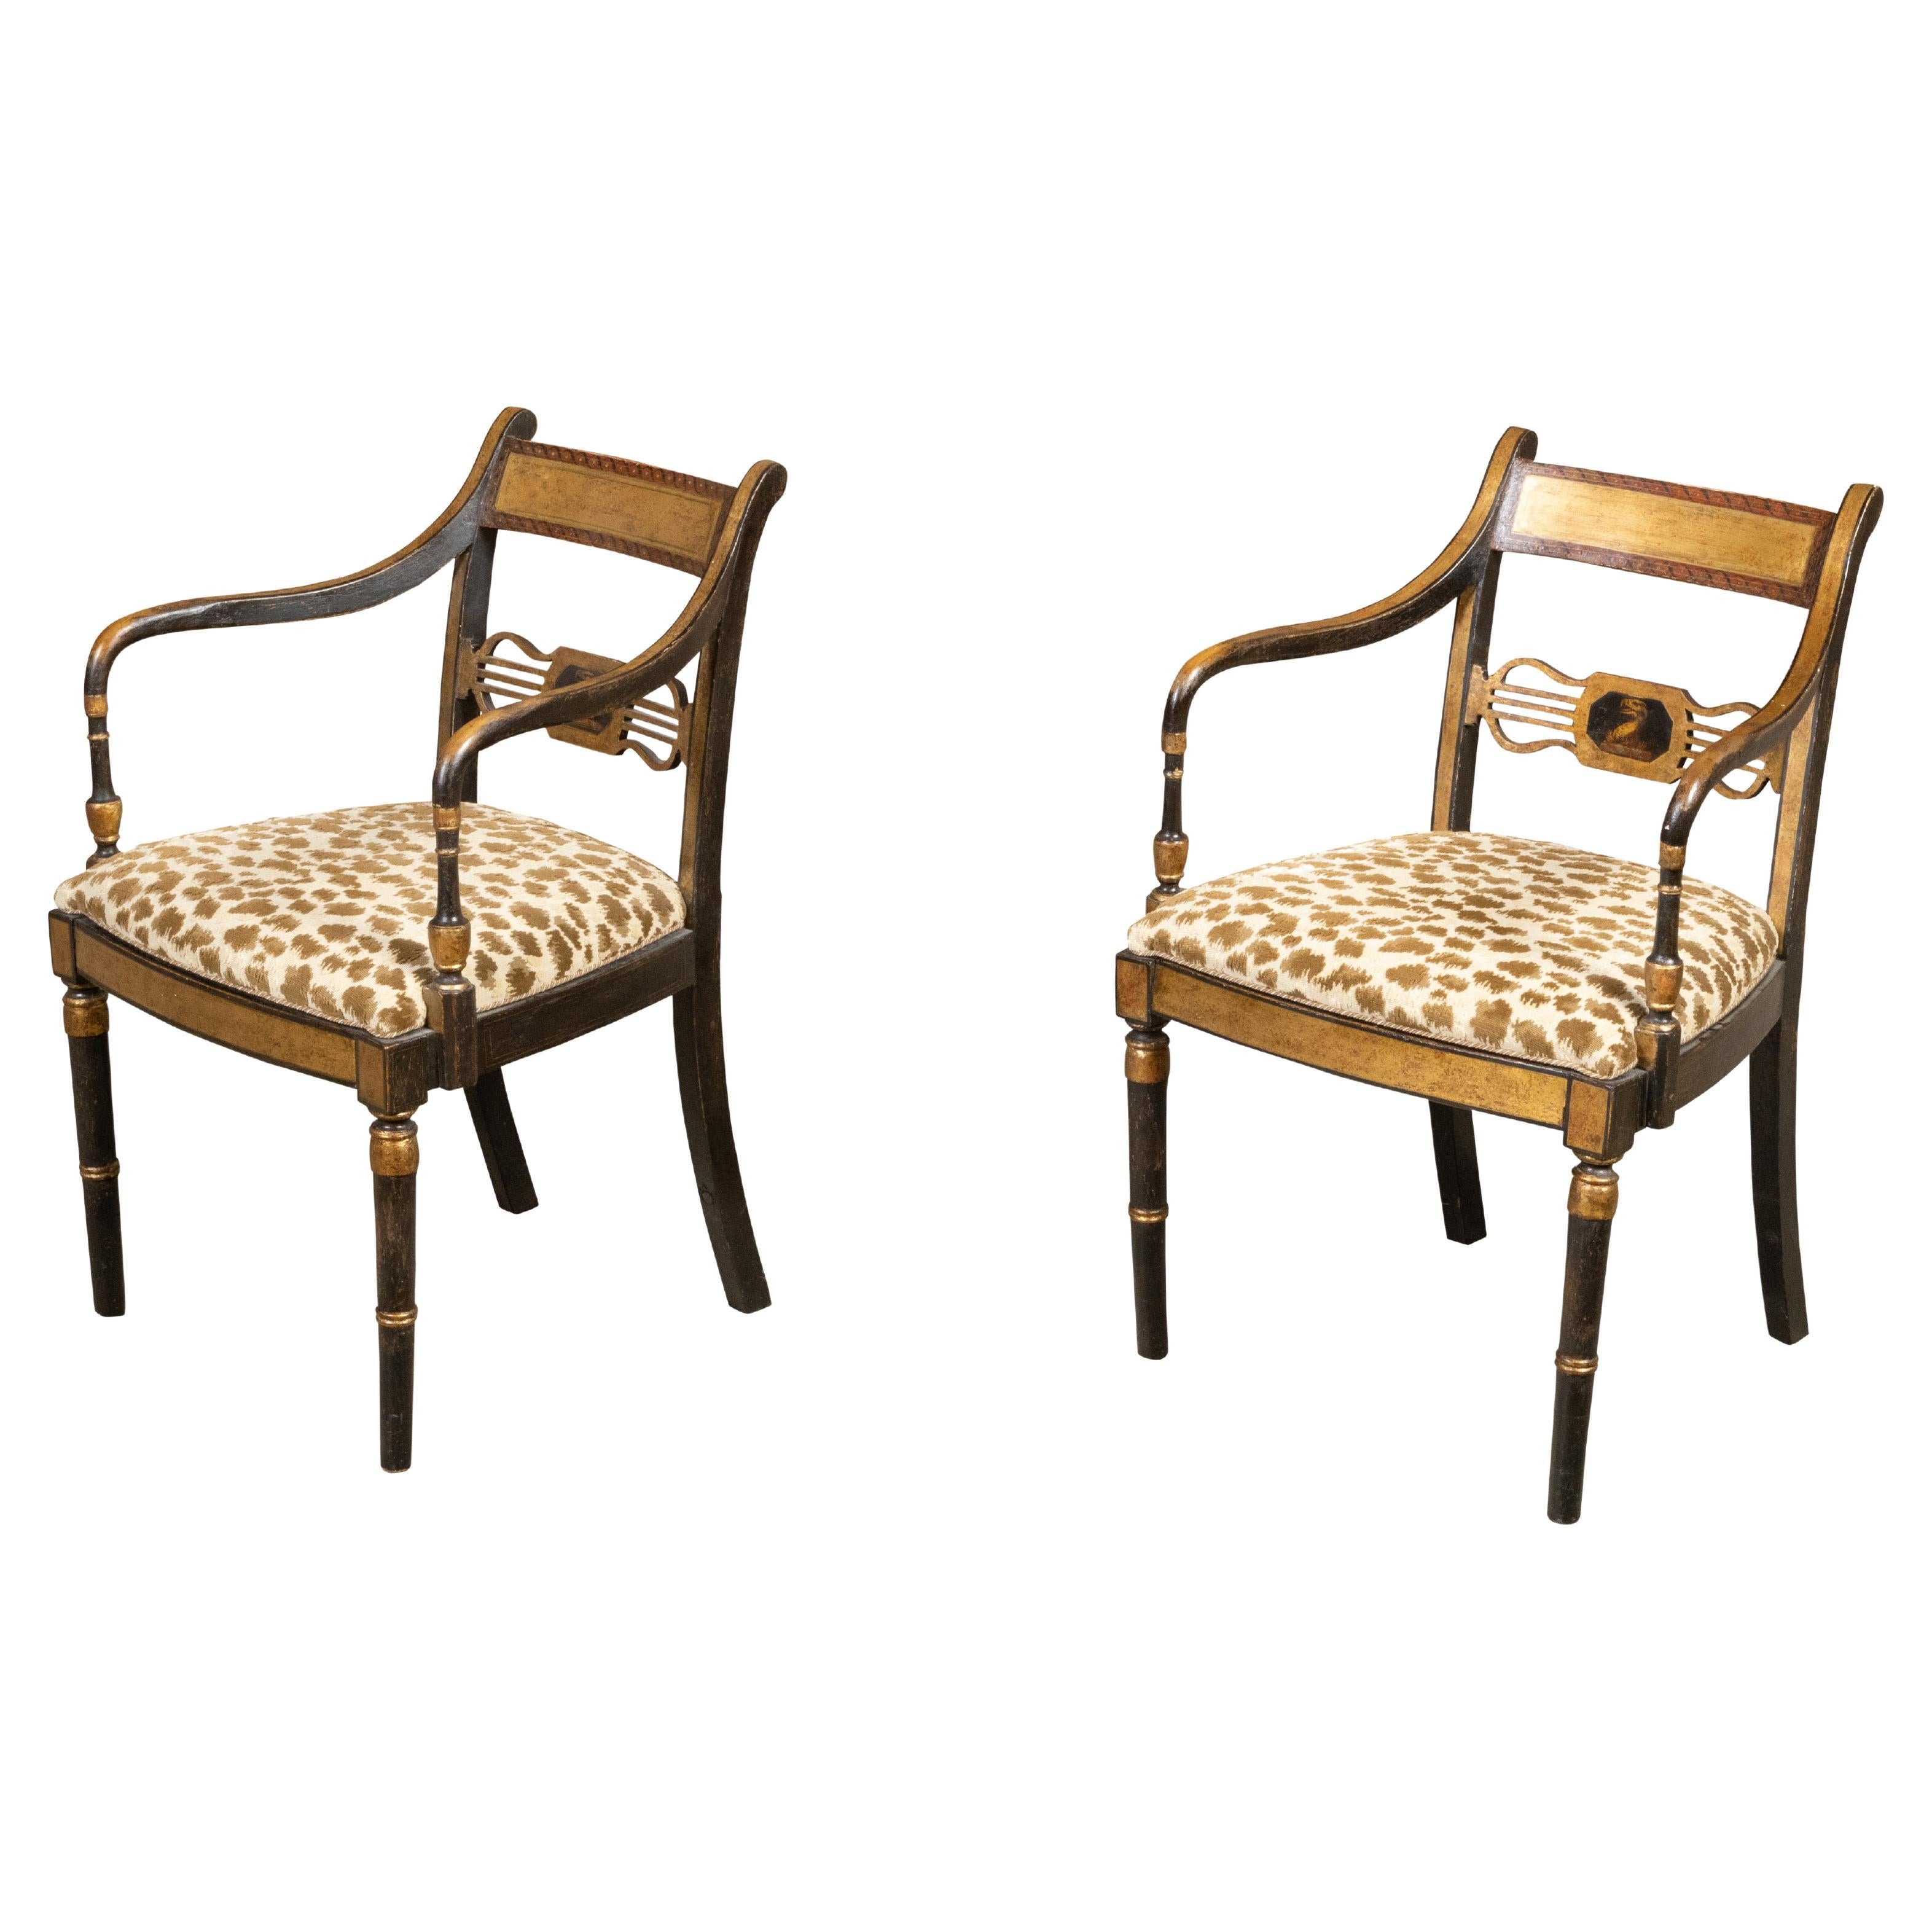 Paire de fauteuils de la période Régence anglaise du début du XIXe siècle, noirs et or